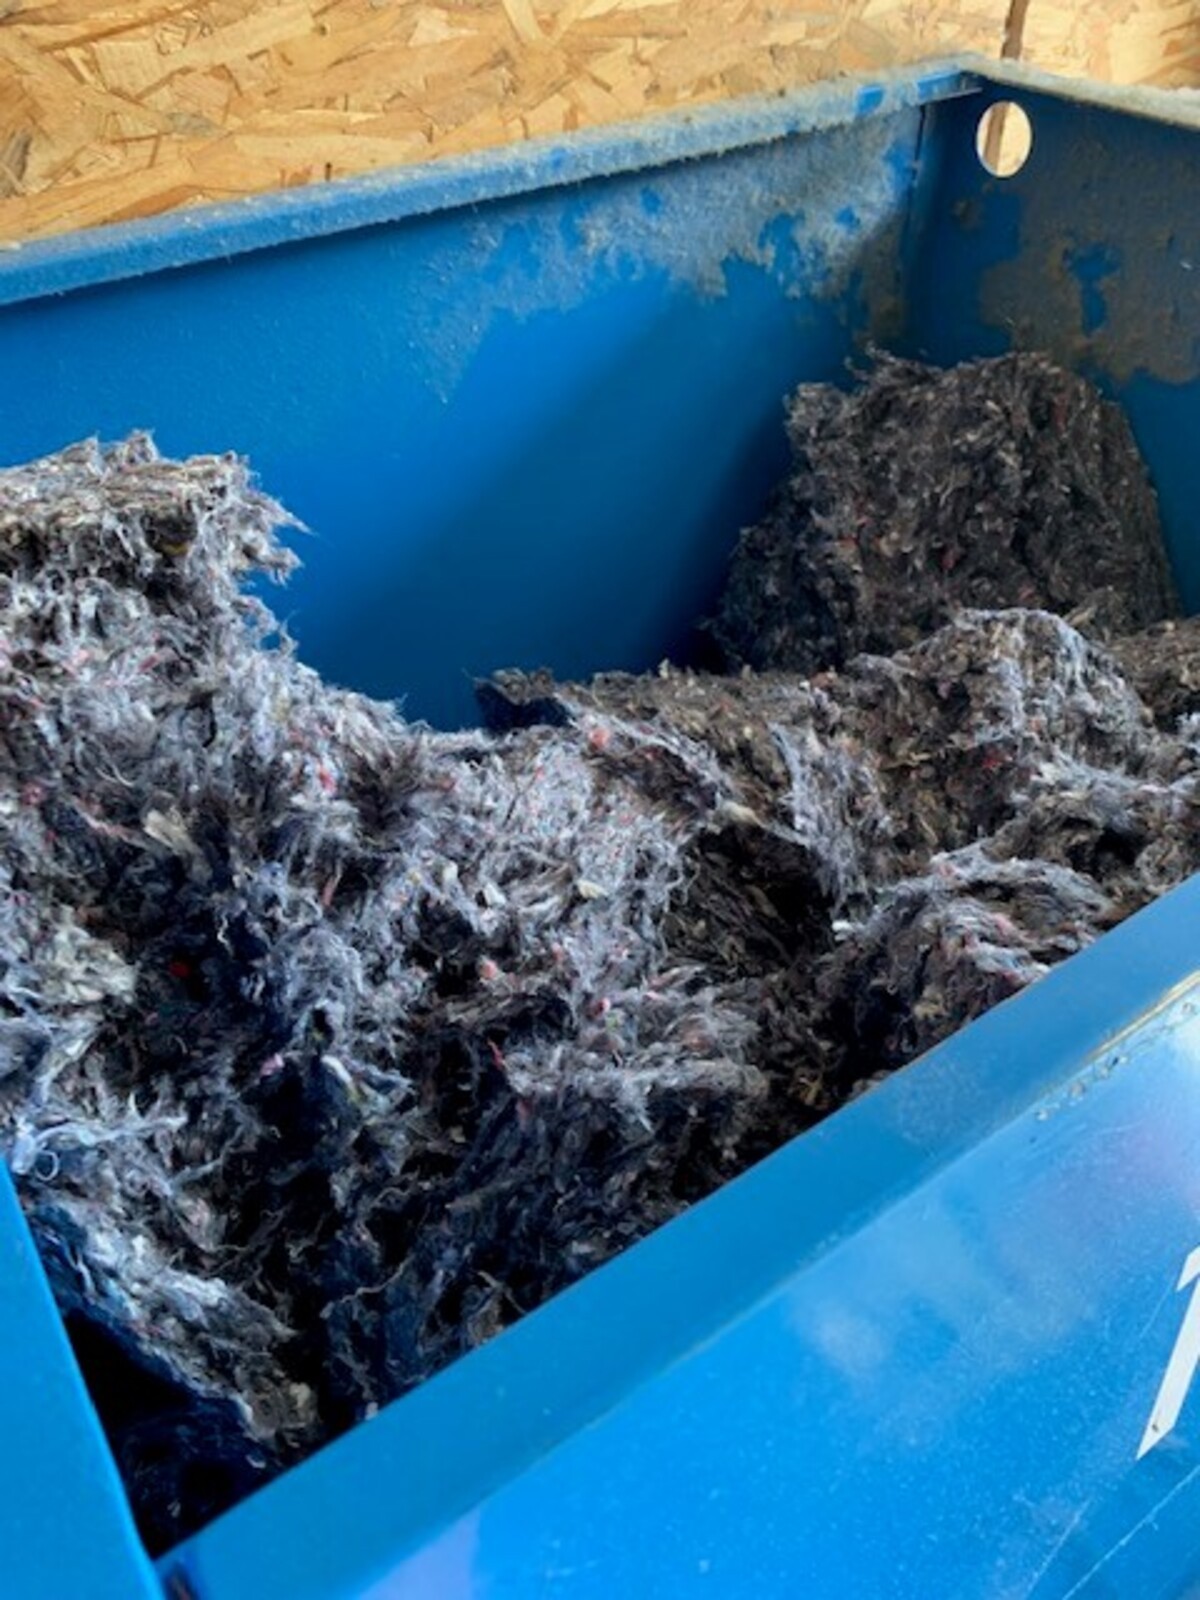 Collecte, Tri et recyclage des textiles usagés du territoire en isolant